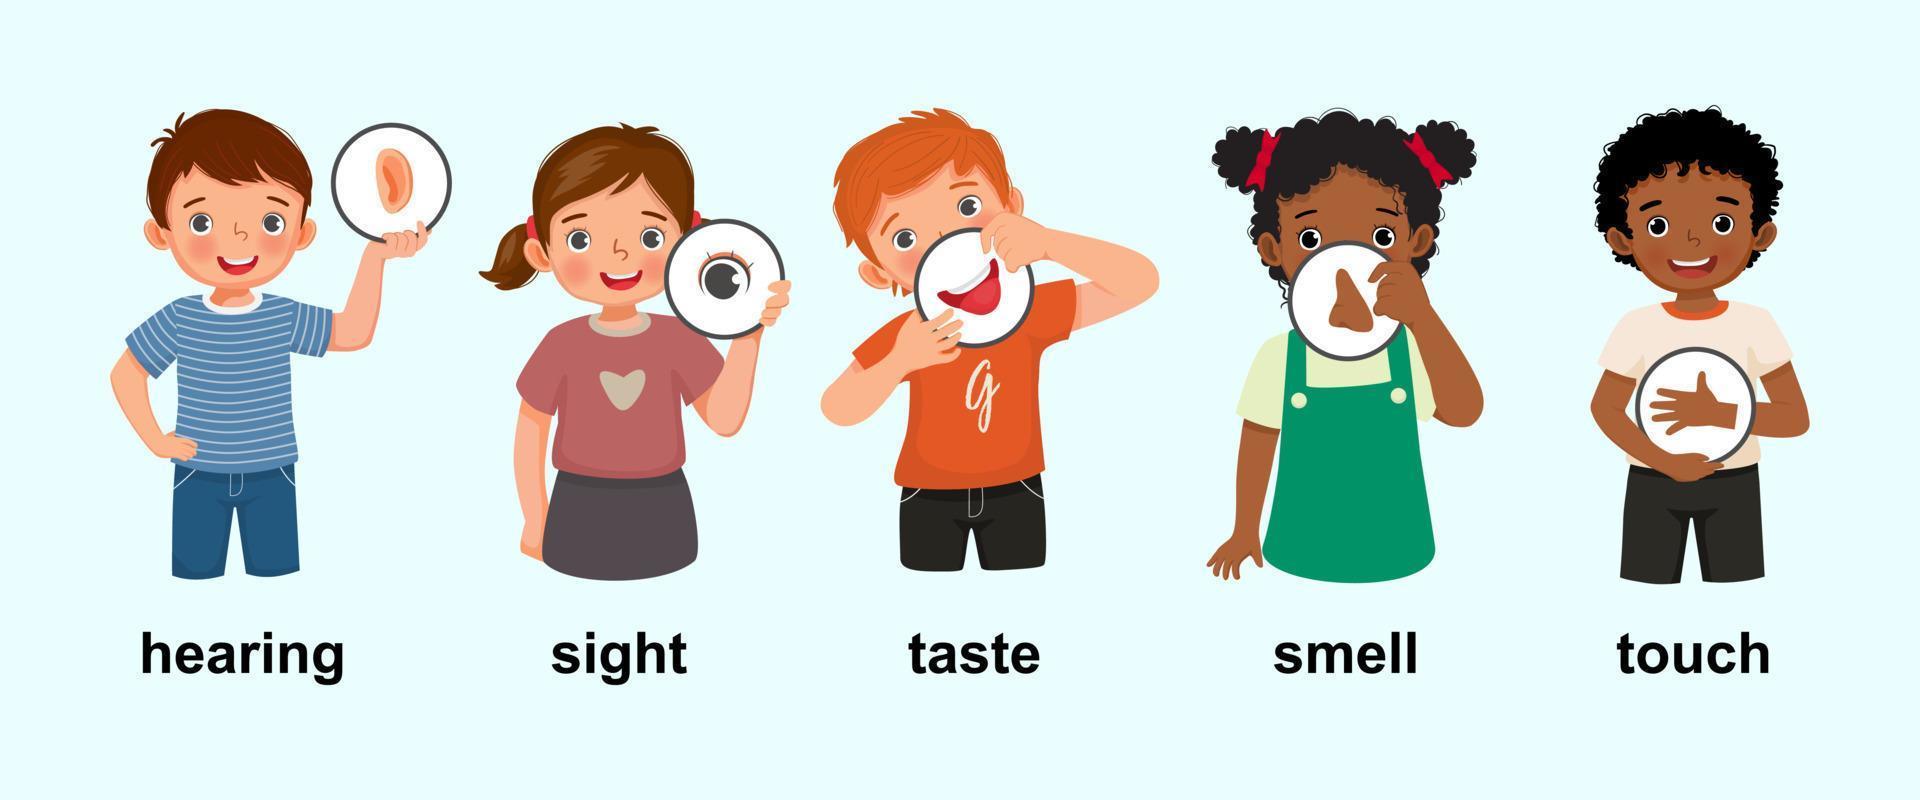 Süße kleine Kinder, Jungen und Mädchen, die fünf Sinnesplakate mit Symbolen zeigen, die Hören, Sehen, Schmecken, Riechen, Berühren als menschliche Körperteile darstellen vektor